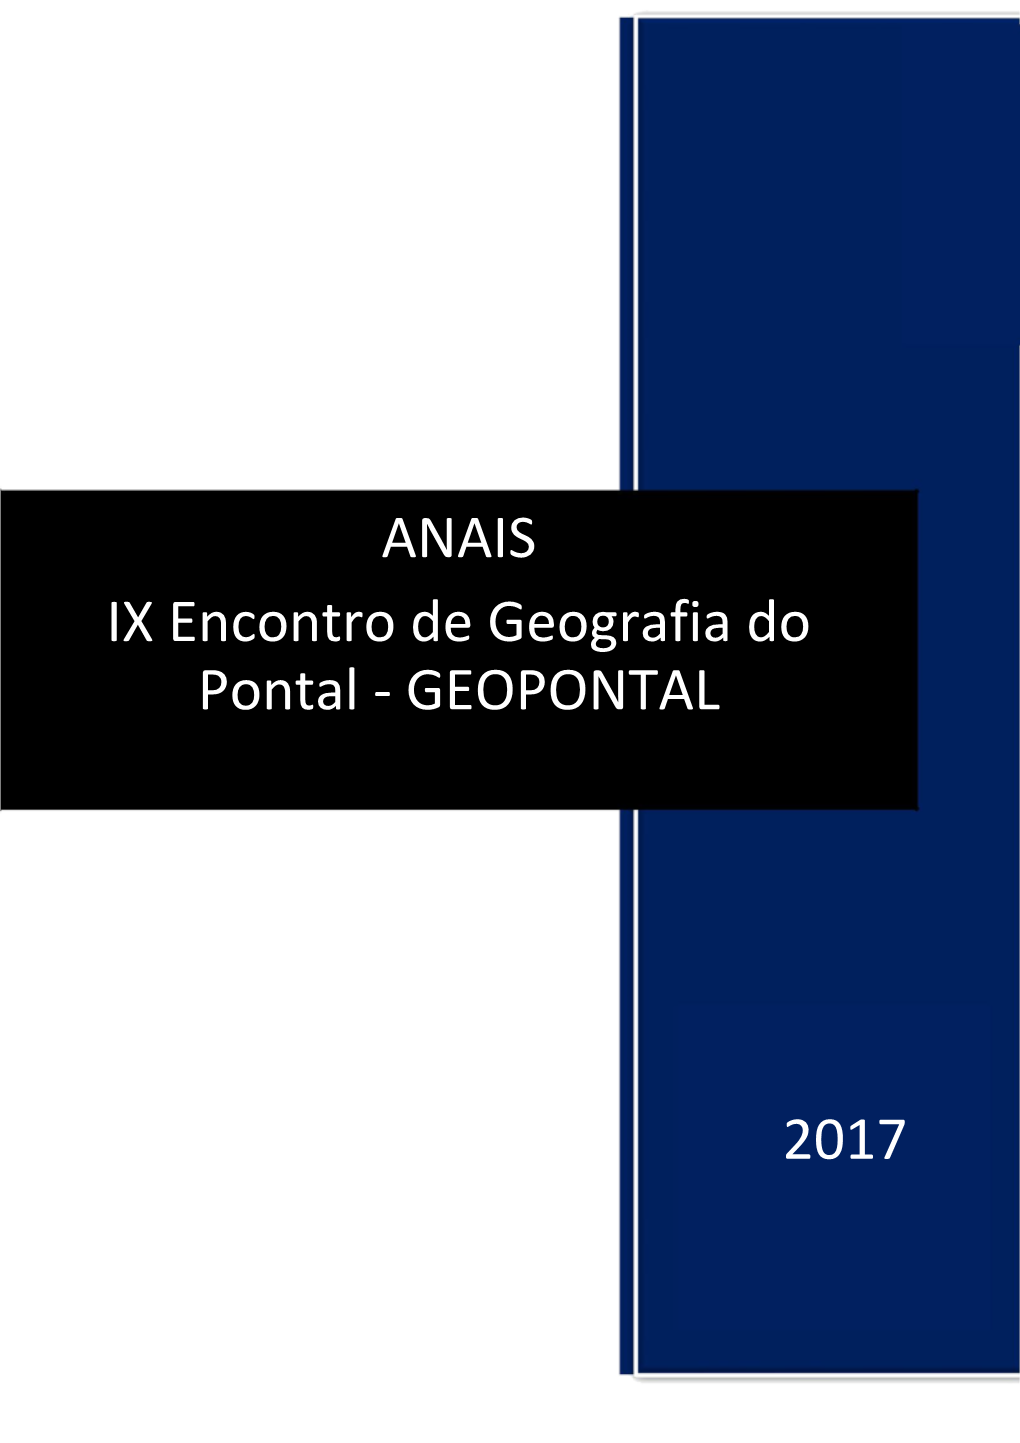 ANAIS IX Encontro De Geografia Do Pontal